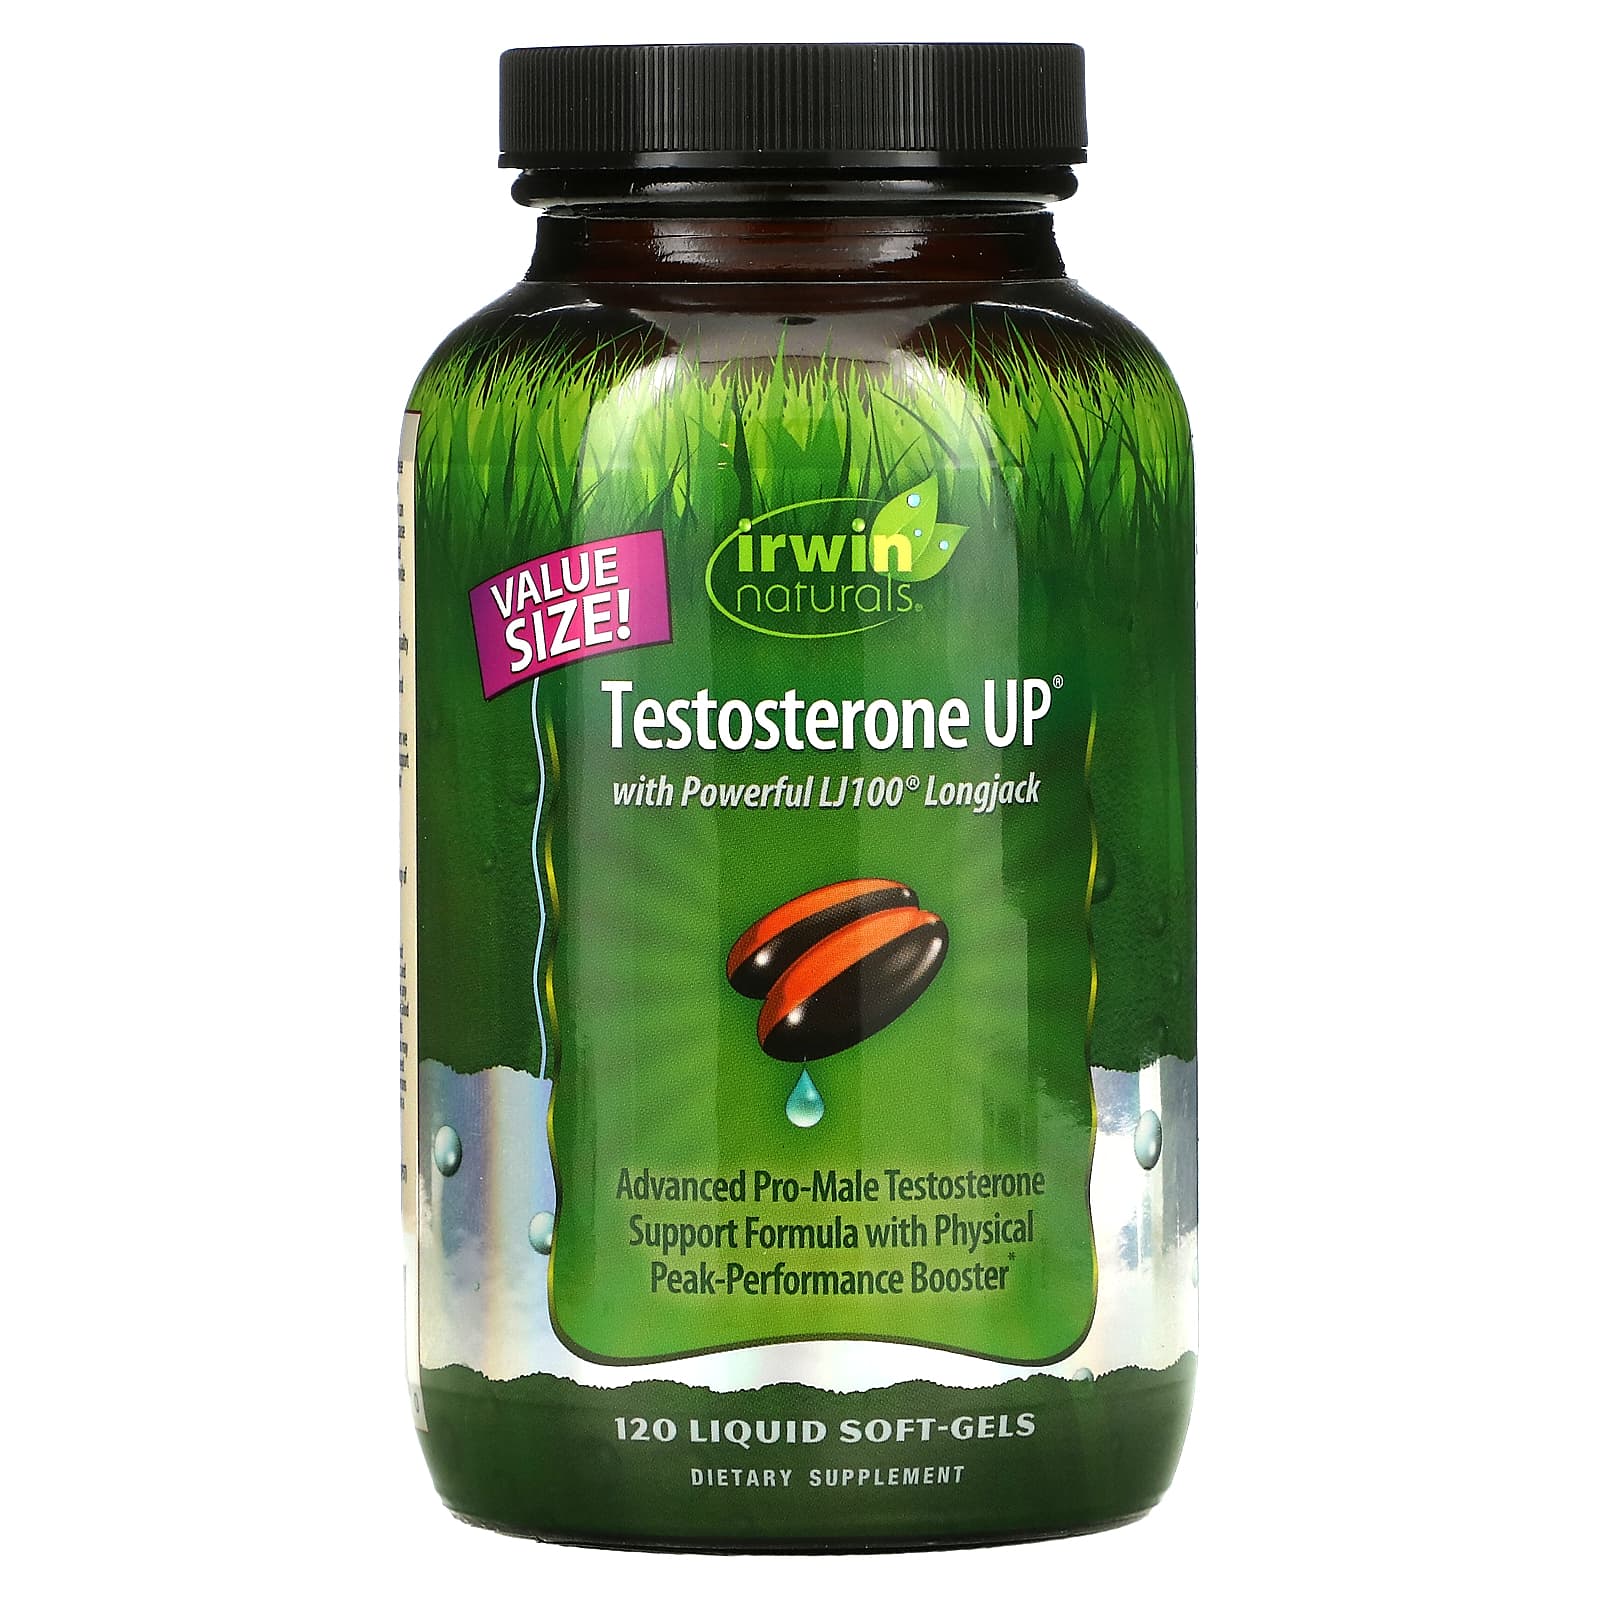 Irwin Naturals Testosterone UP, 120 Liquid Soft-Gels